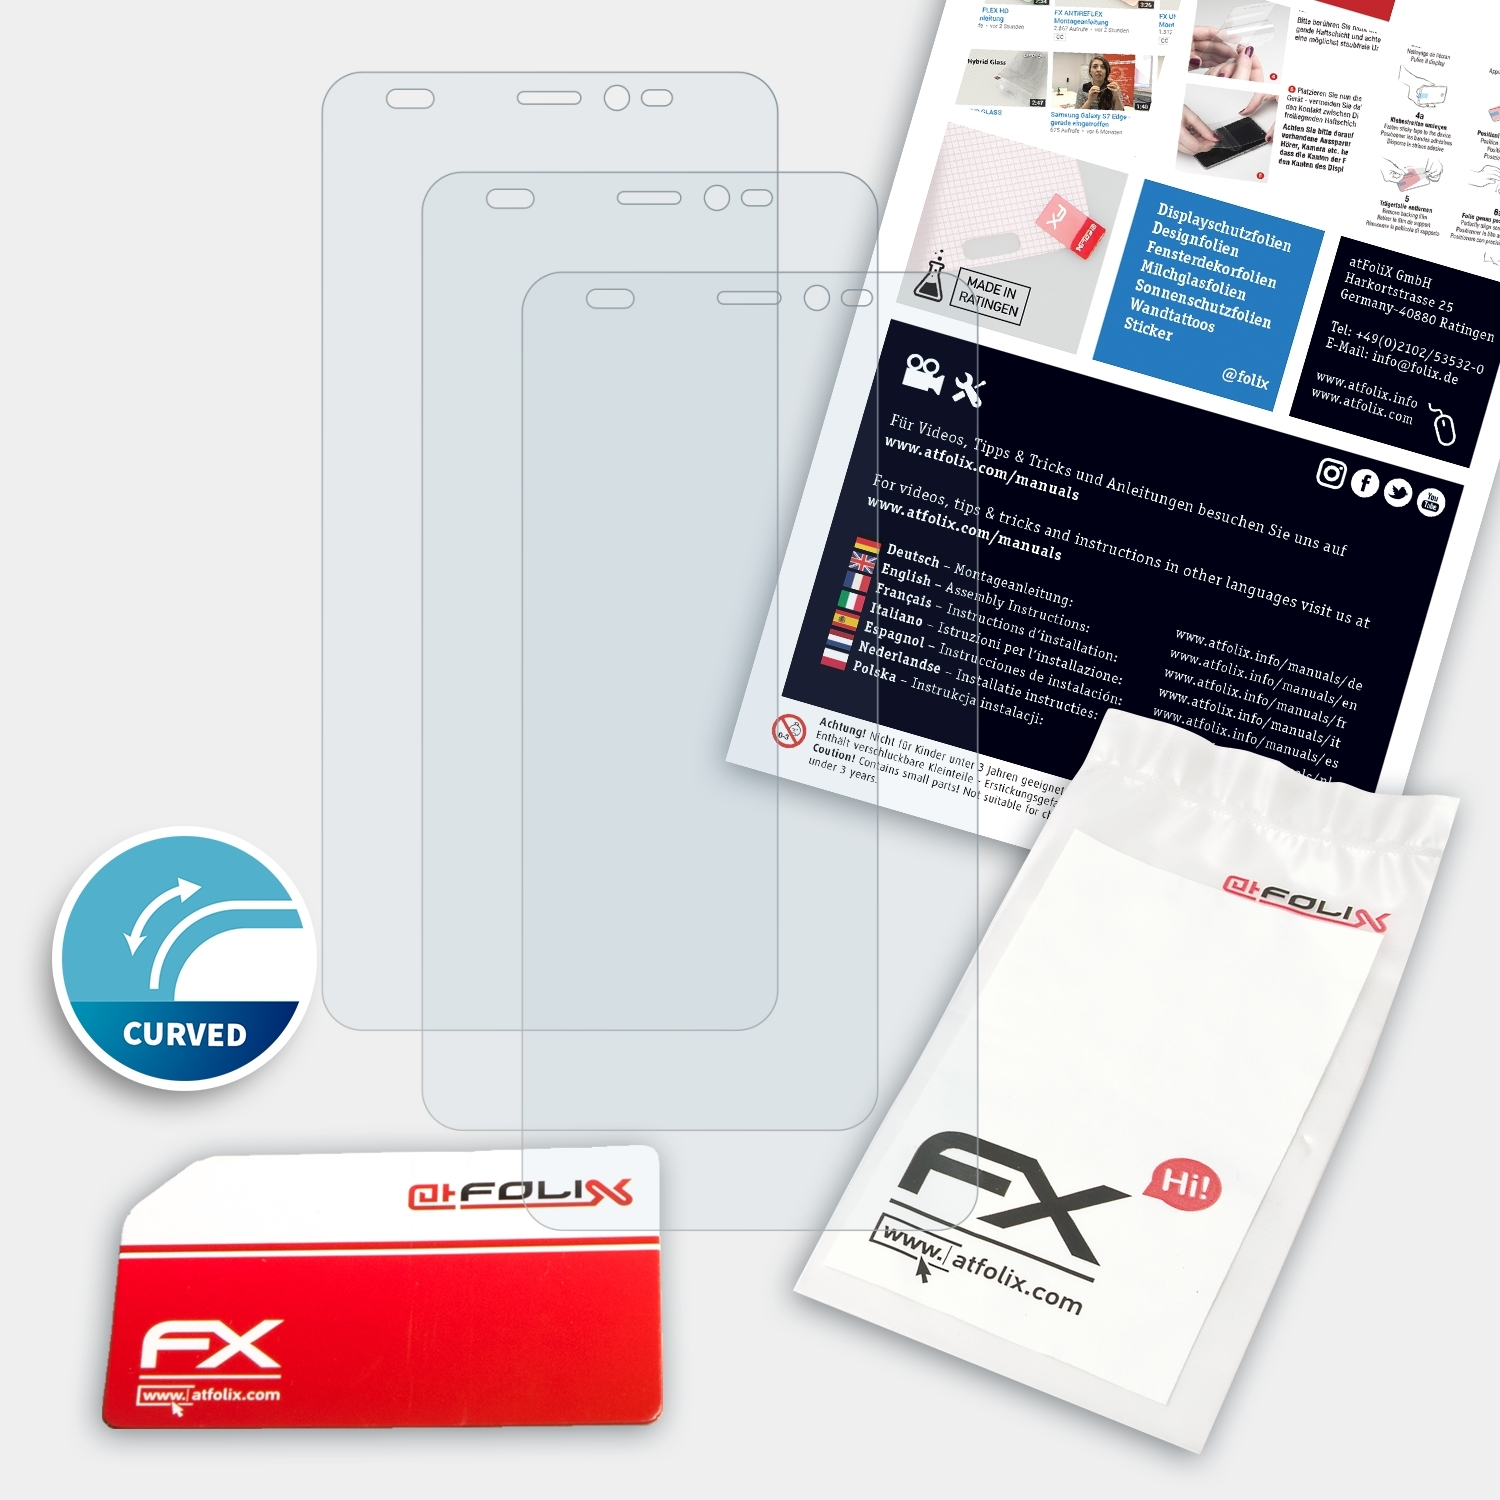 ATFOLIX 3x FX-ActiFleX Displayschutz(für Y60) Wiko